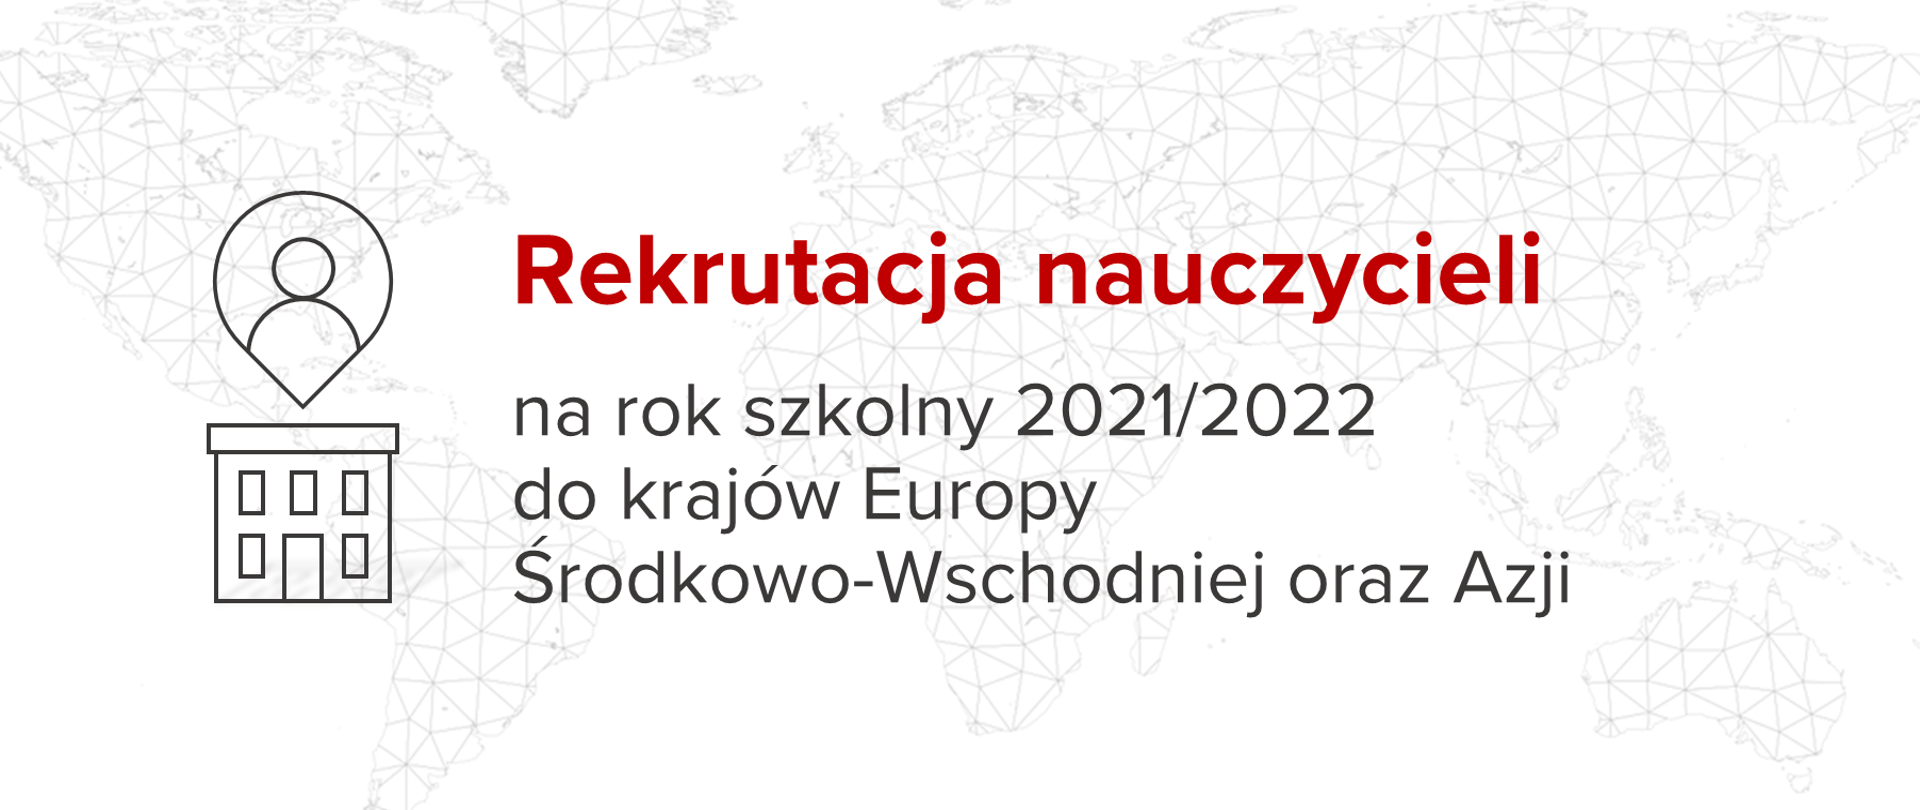 Grafika z tekstem: Rekrutacja nauczycieli na rok szkolny 2021/2022 do krajów Europy Środkowo-Wschodniej oraz Azji.